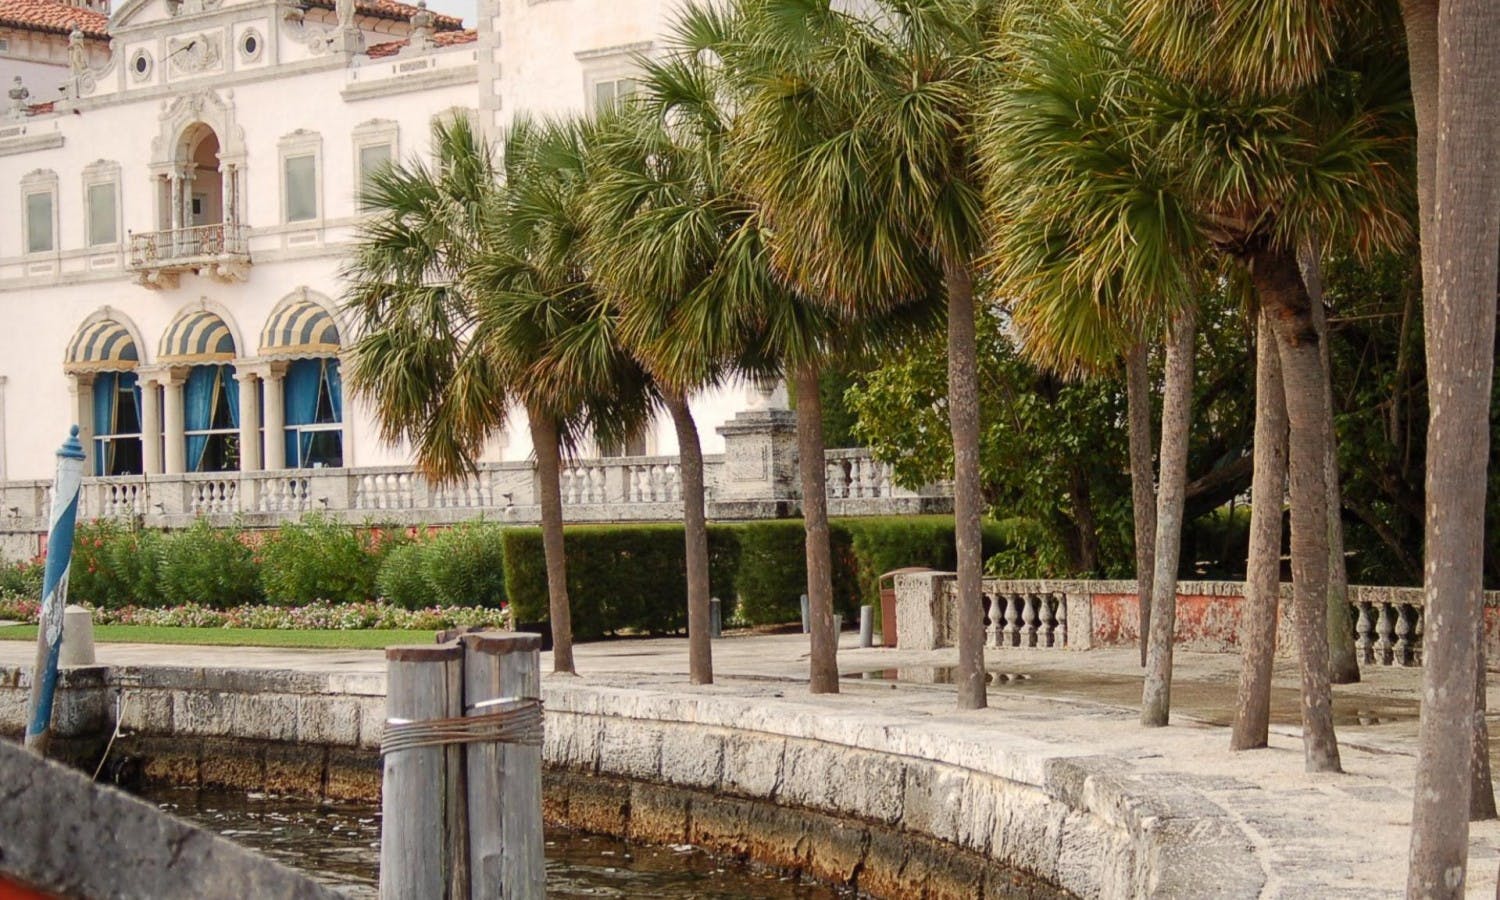 vizcaya museum - miami - gardens - palm trees.jpg